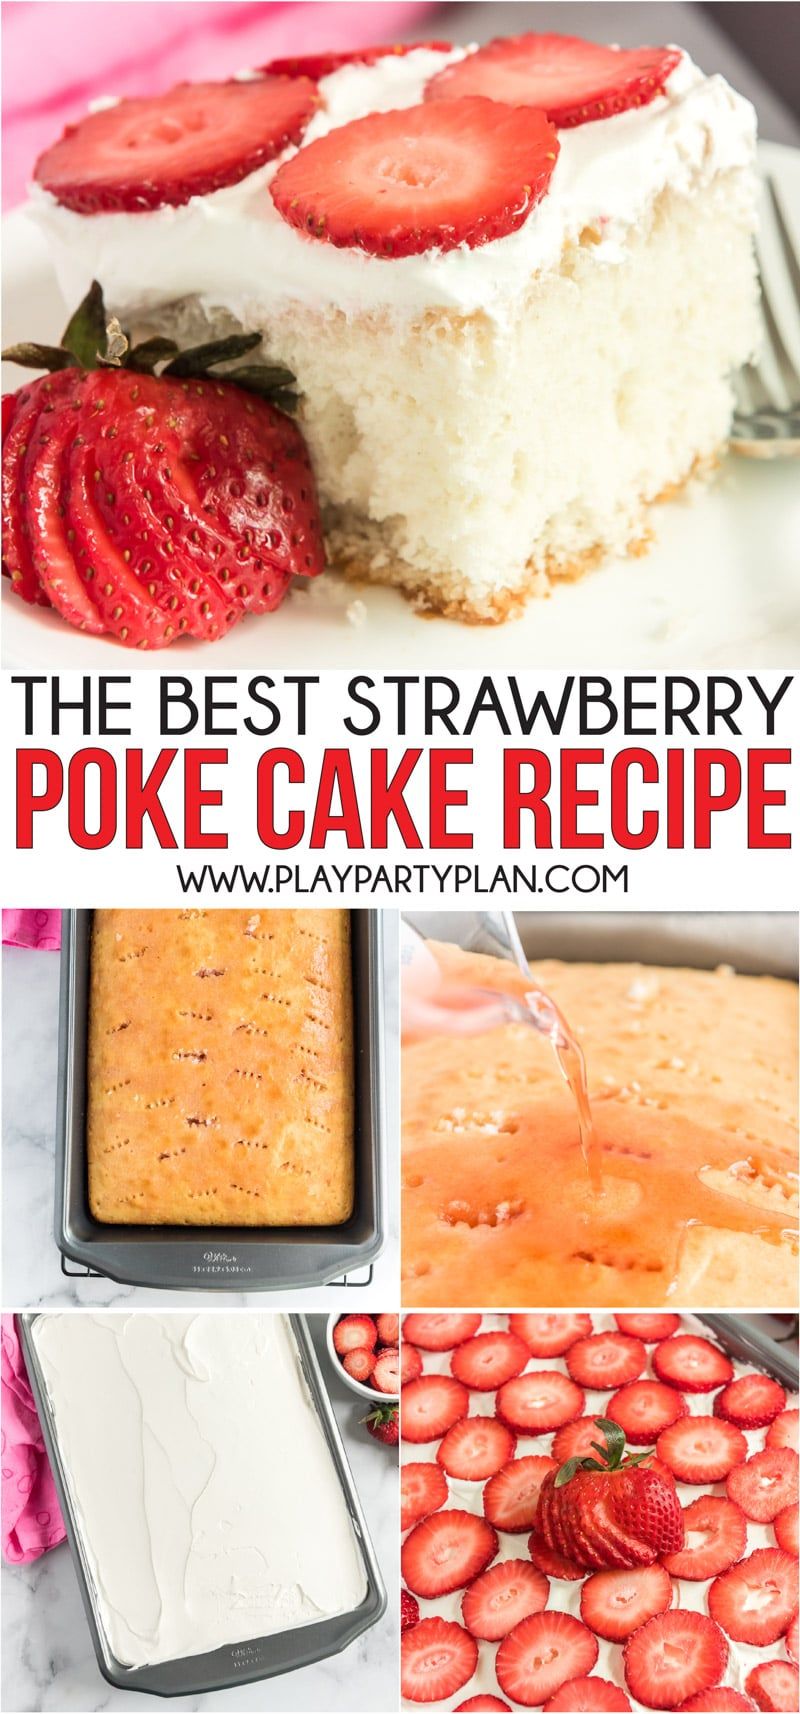 Uma receita fácil e deliciosa de bolo de morango que faz a sobremesa de verão perfeita!